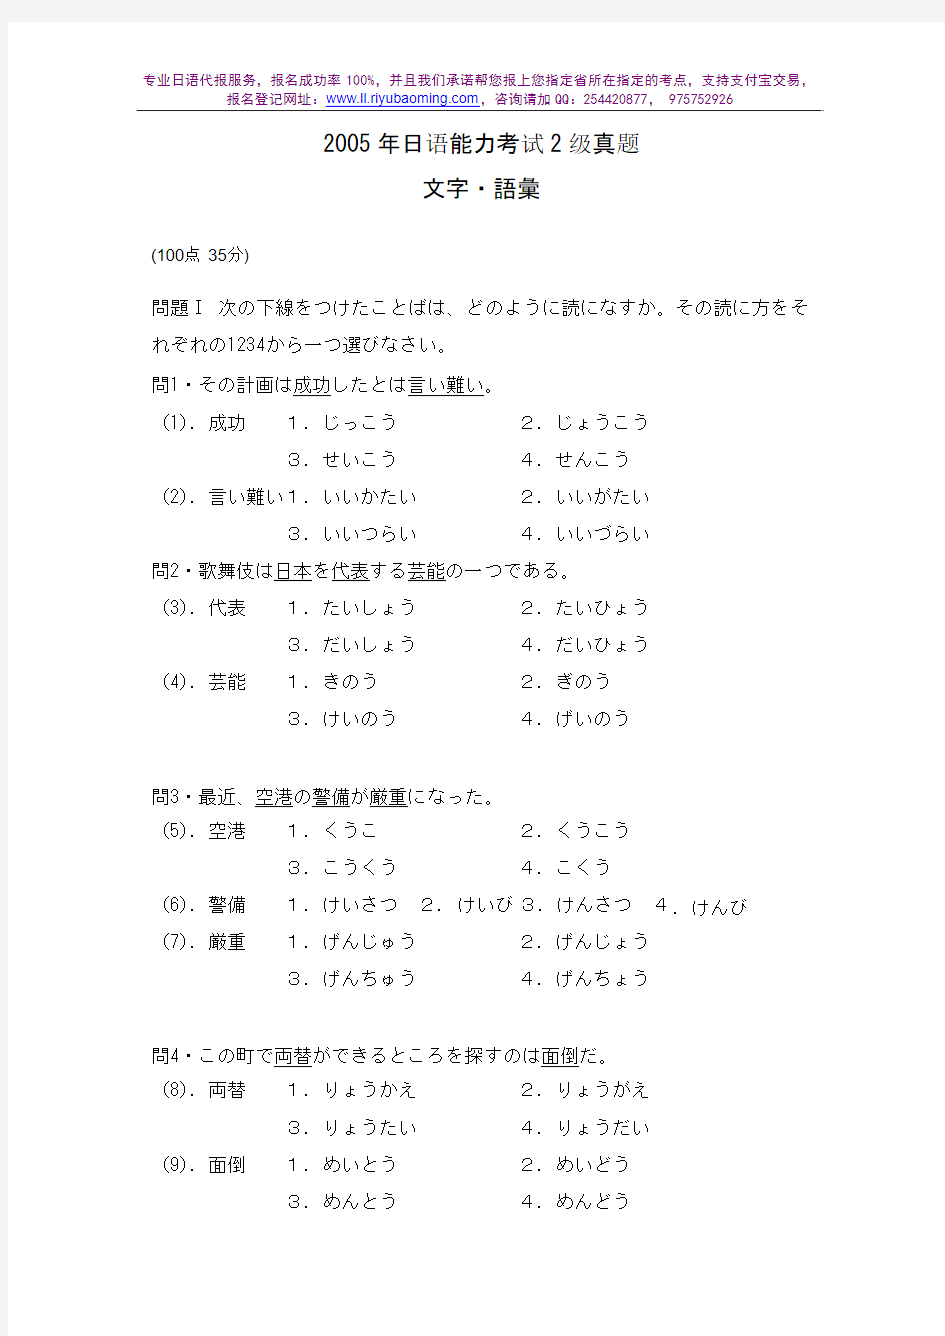 2005年日语能力考试2级真题-文字词汇